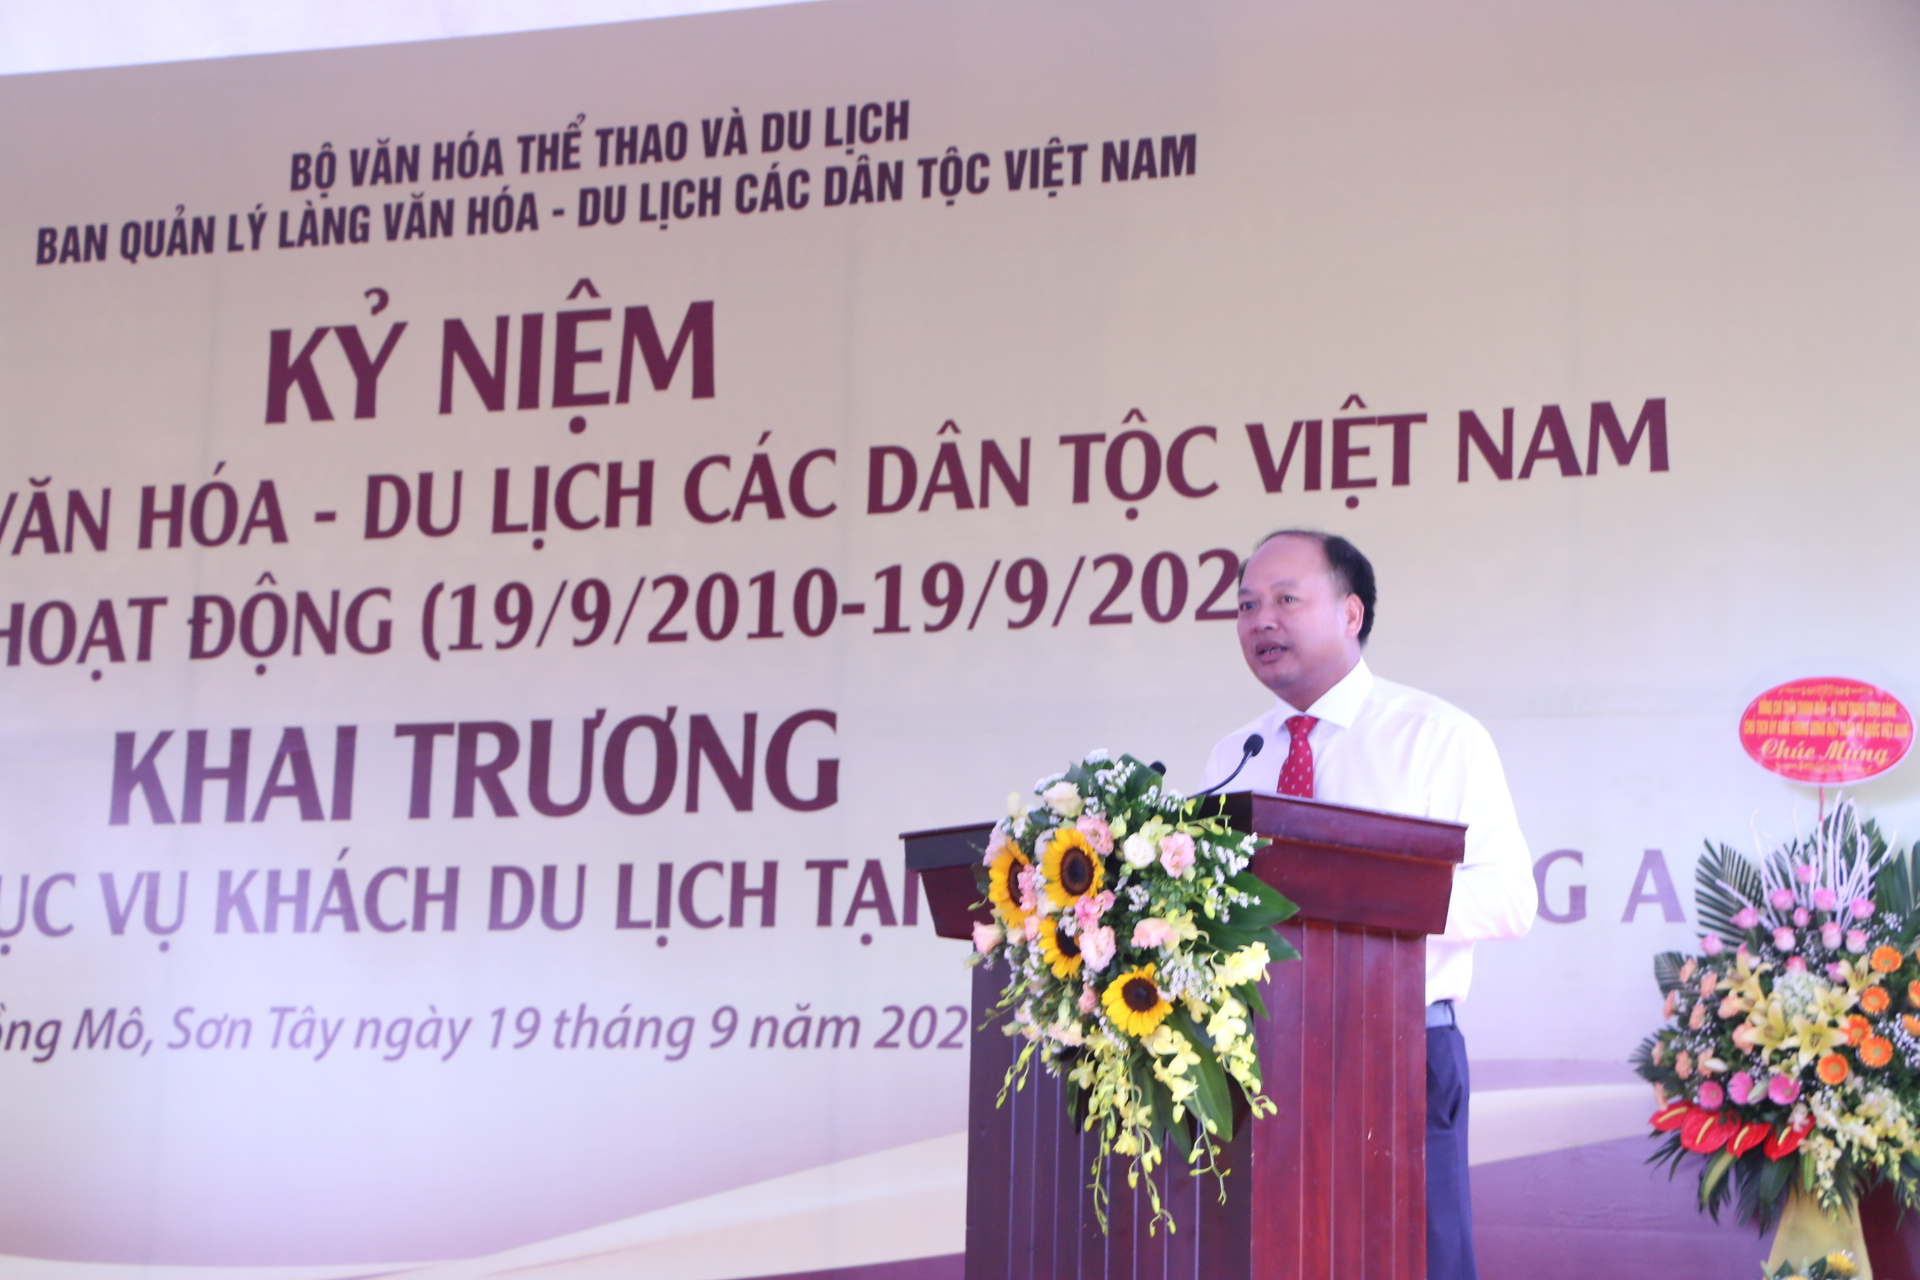 Phó Trưởng ban Phụ trách BQL Làng Văn hóa - Du lịch các dân tộc Việt Nam phát biểu báo cáo tại buổi lễ